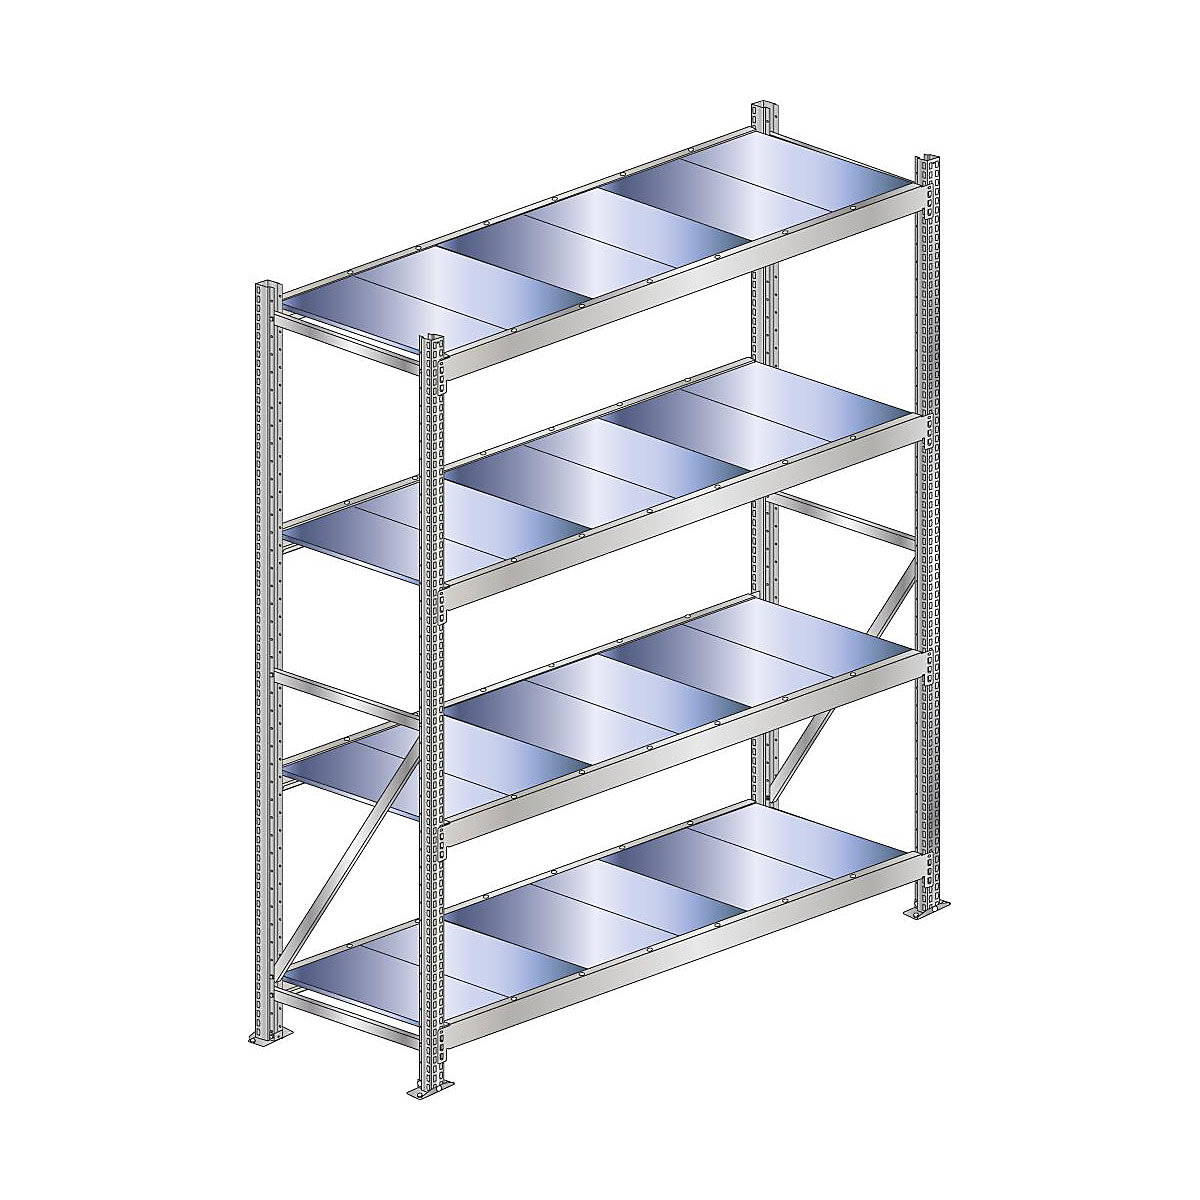 Wide span shelf unit, shelf load 500 kg – SCHULTE, shelf width 2250 mm, standard shelf unit, height 2500 mm, depth 500 mm